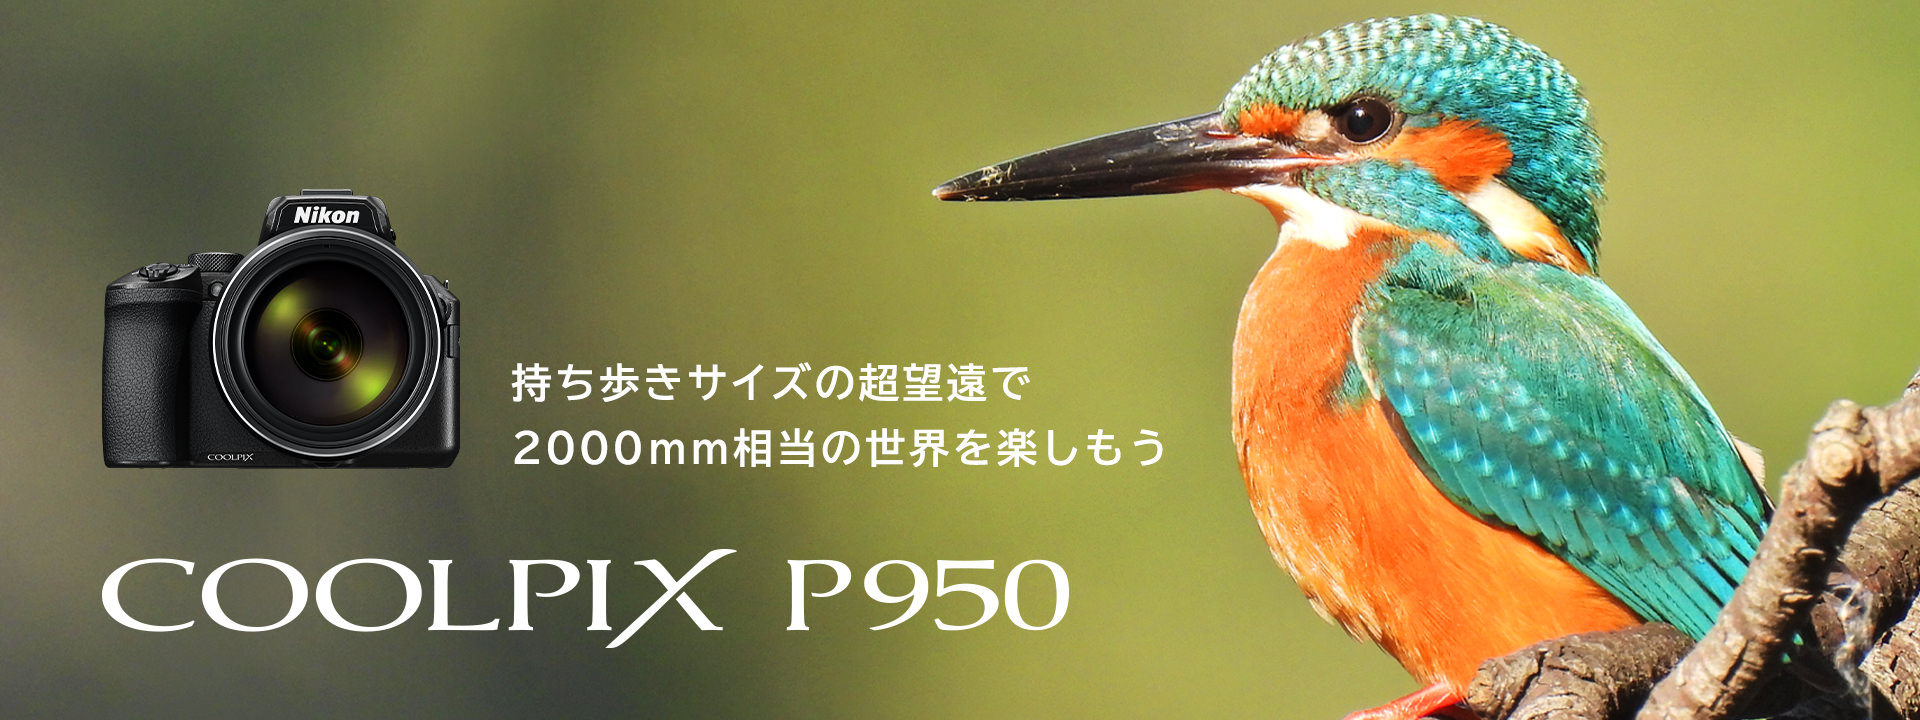 COOLPIX P950 - 概要 | コンパクトデジタルカメラ | ニコンイメージング